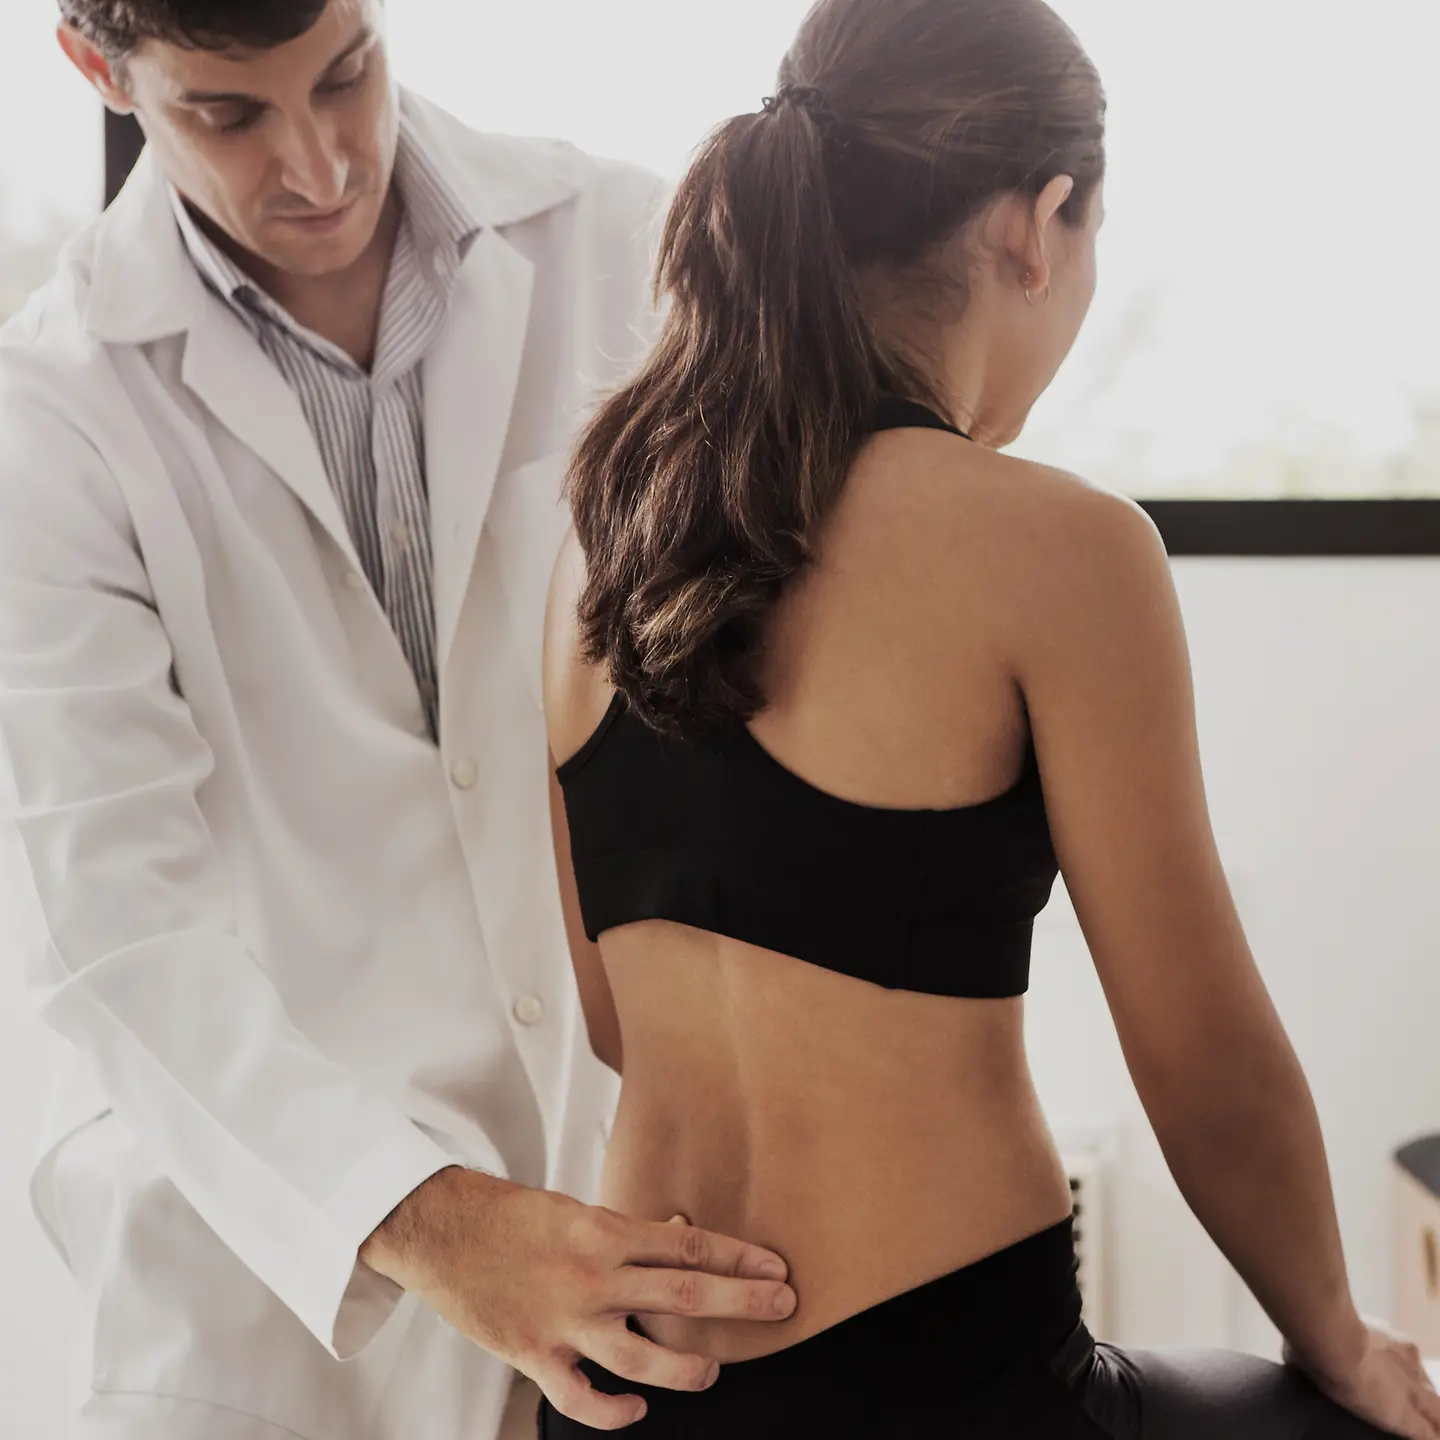 Eine junge Frau wird aufgrund ihrer starken Rückenschmerzen von einem Arzt am unteren Rücken untersucht.